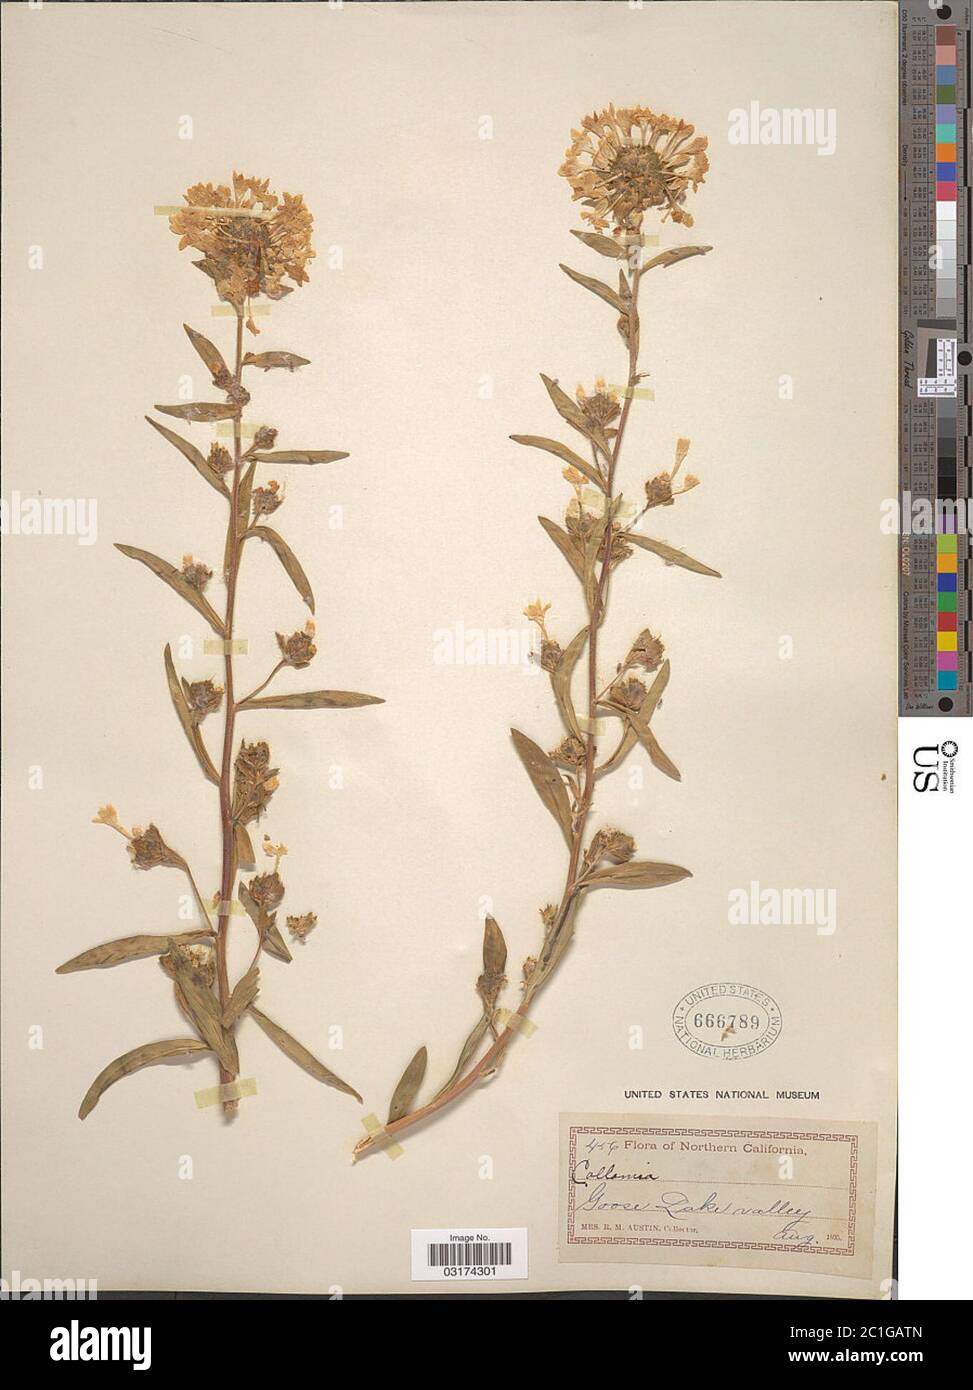 Collomia grandiflora Douglas ex Lindl Collomia grandiflora Douglas ex Lindl. Stock Photo